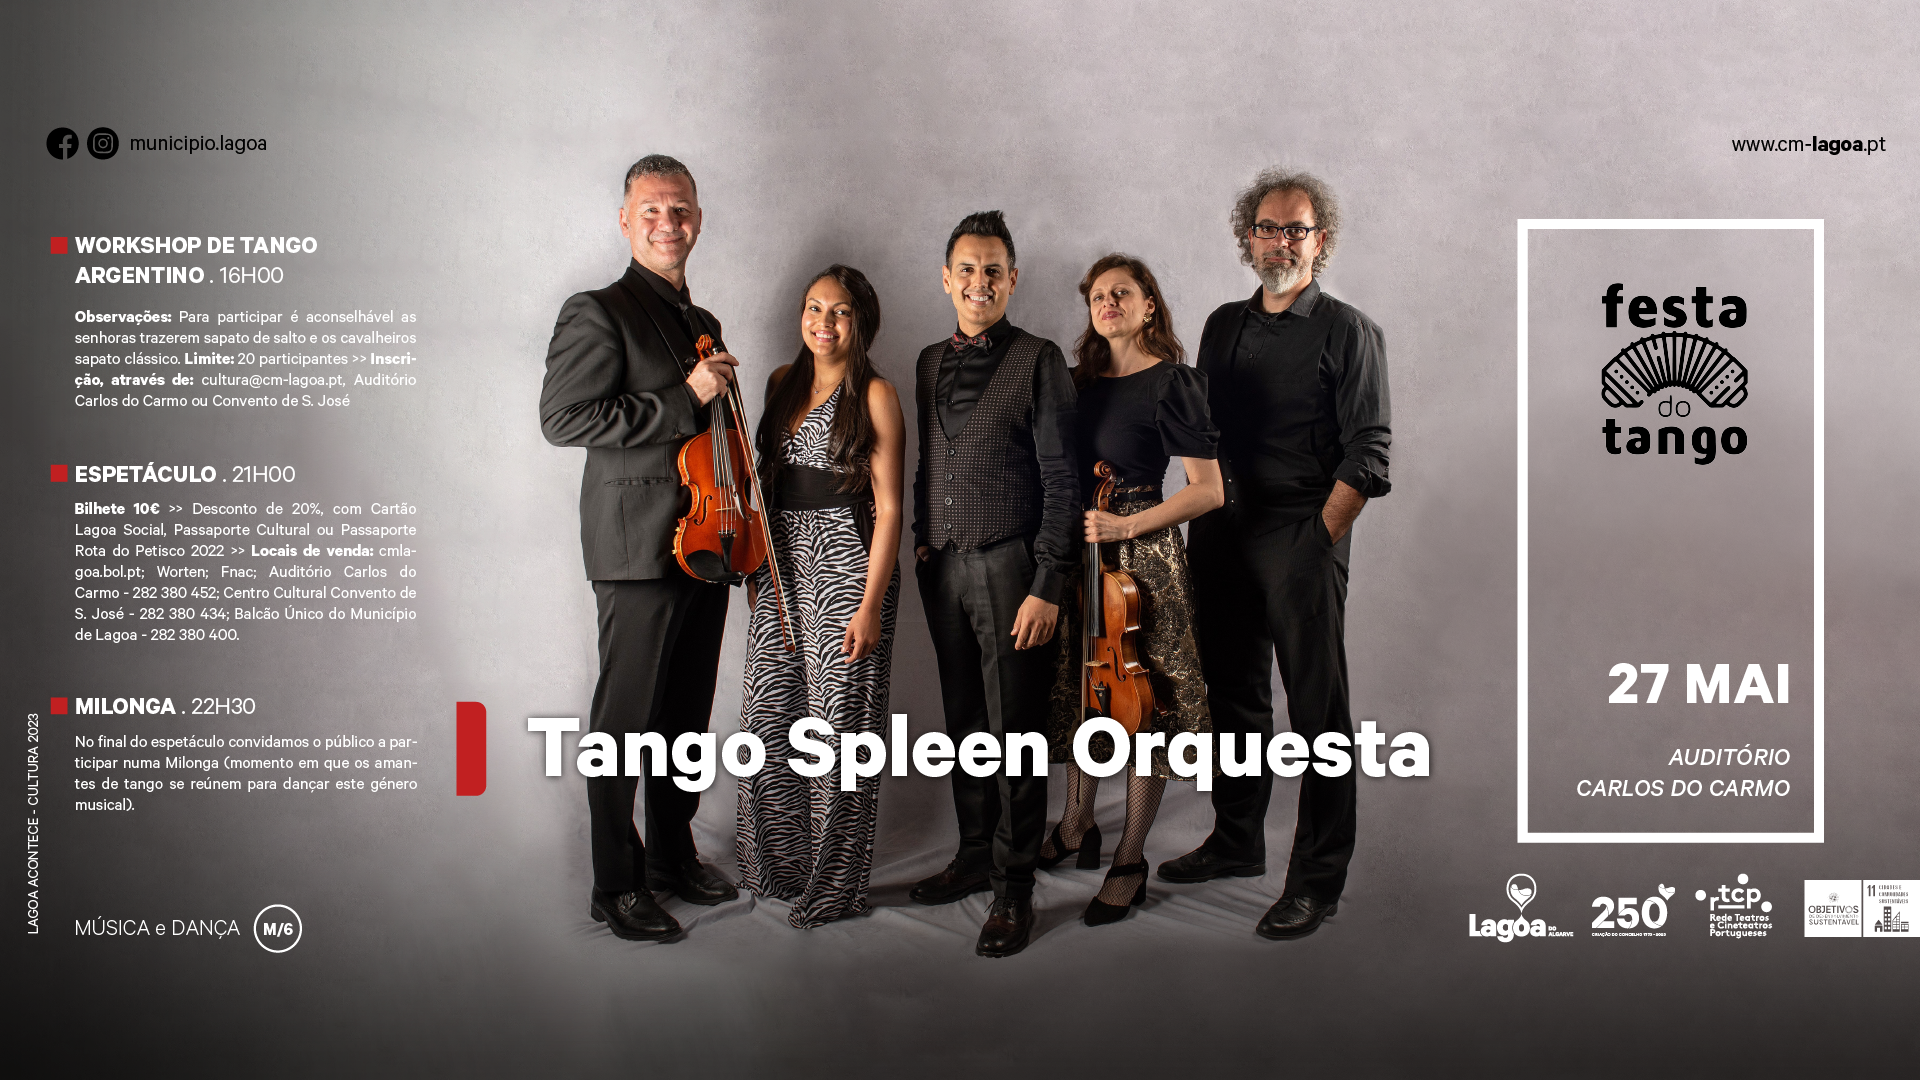 "Festa do Tango" | Tango Spleen Orquesta